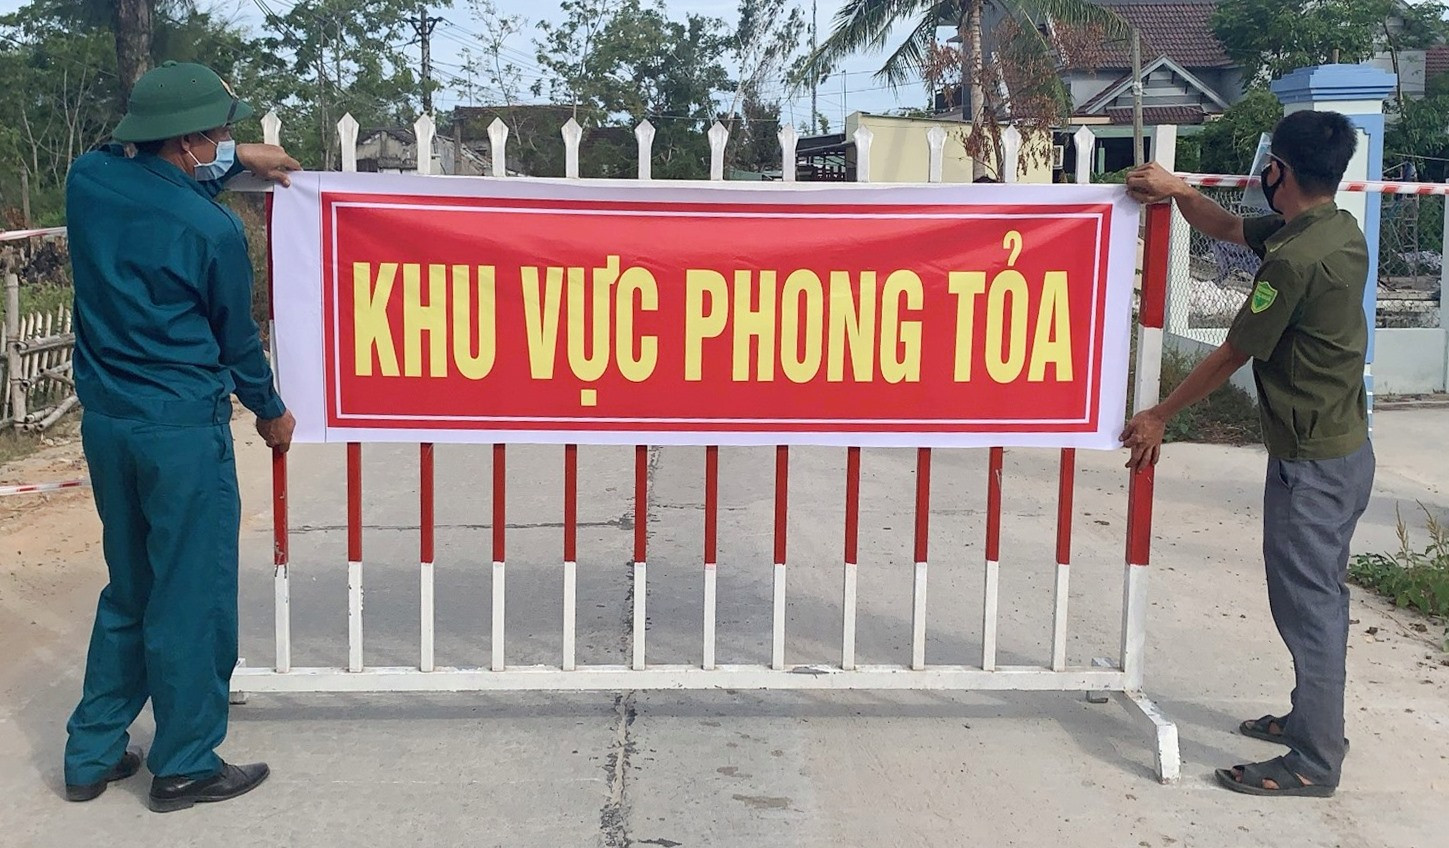 Phong tỏa tạm thời tại tổ 2 thôn Tất Viên (xã Bình Phục) khoảng 37 hộ với 160 nhân khẩu